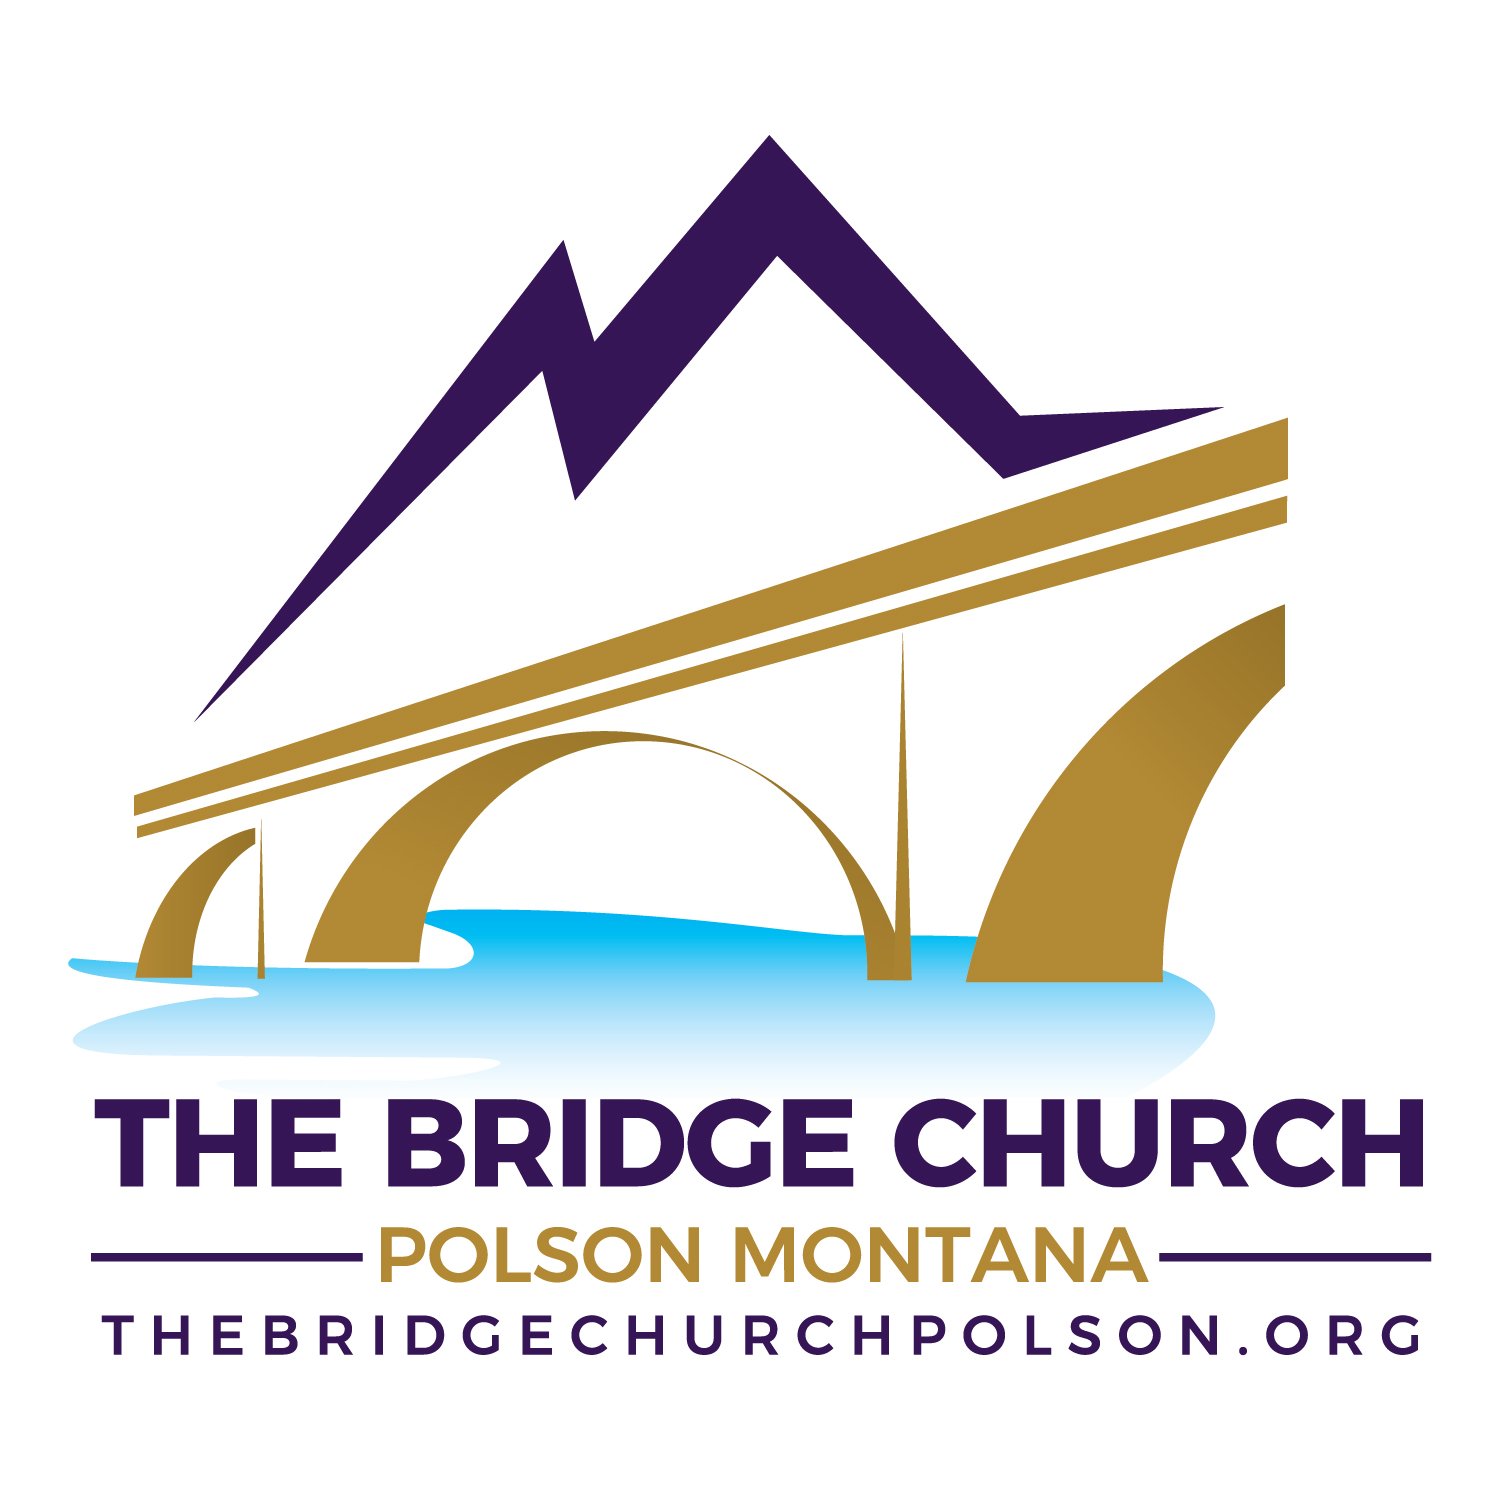 The Bridge Church of Polson